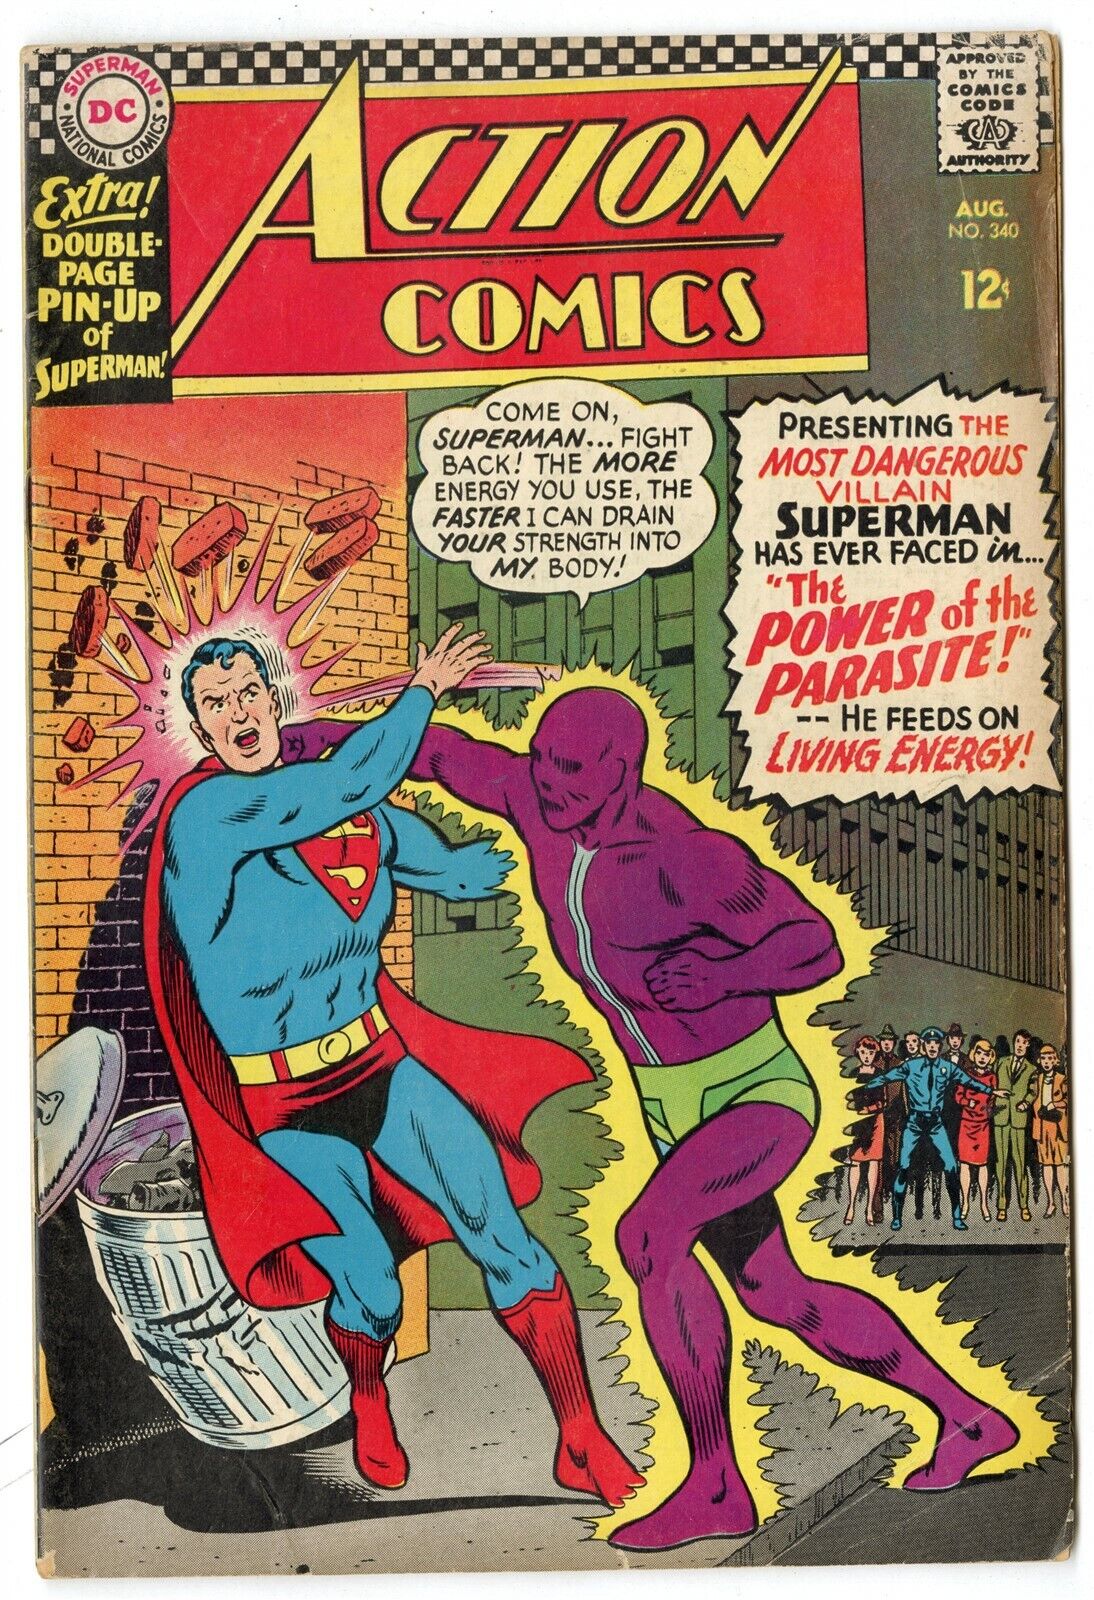 Action Comics #340 VG 4.0   1st app. The Parasite  Superman  DC 1966  No Reserve